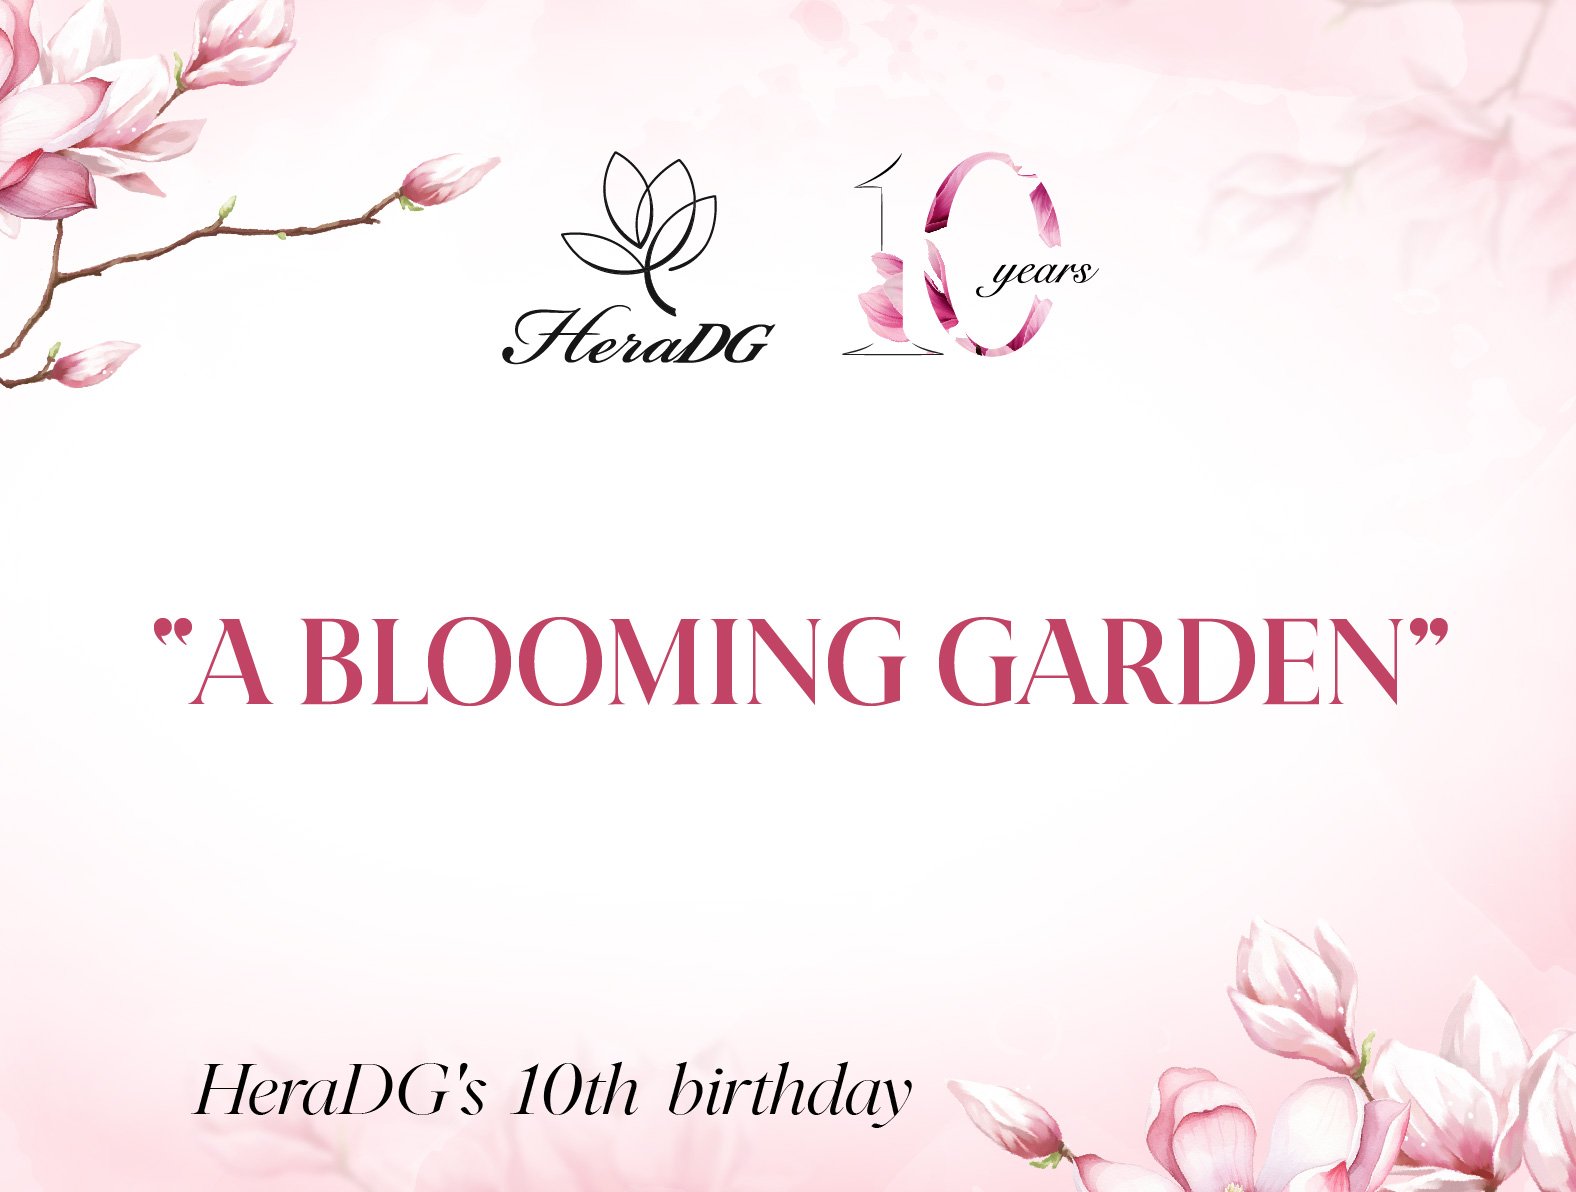 HeraDG kỷ niệm 10 năm thành lập với sự kiện “A BLOOMING GARDEN” 